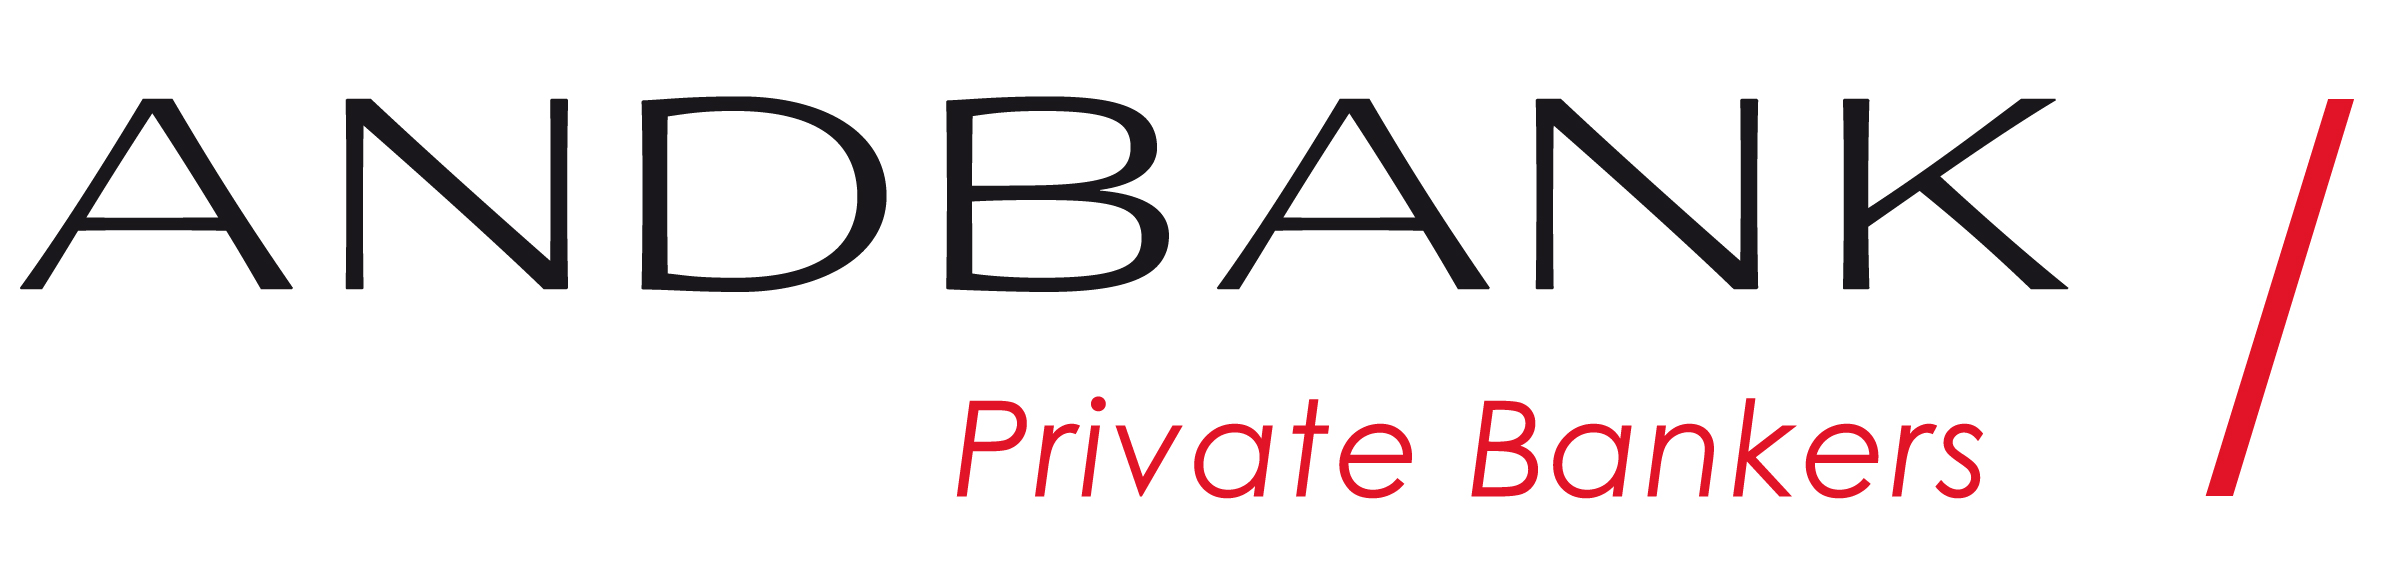 ANDBANK-privatebankers_generic